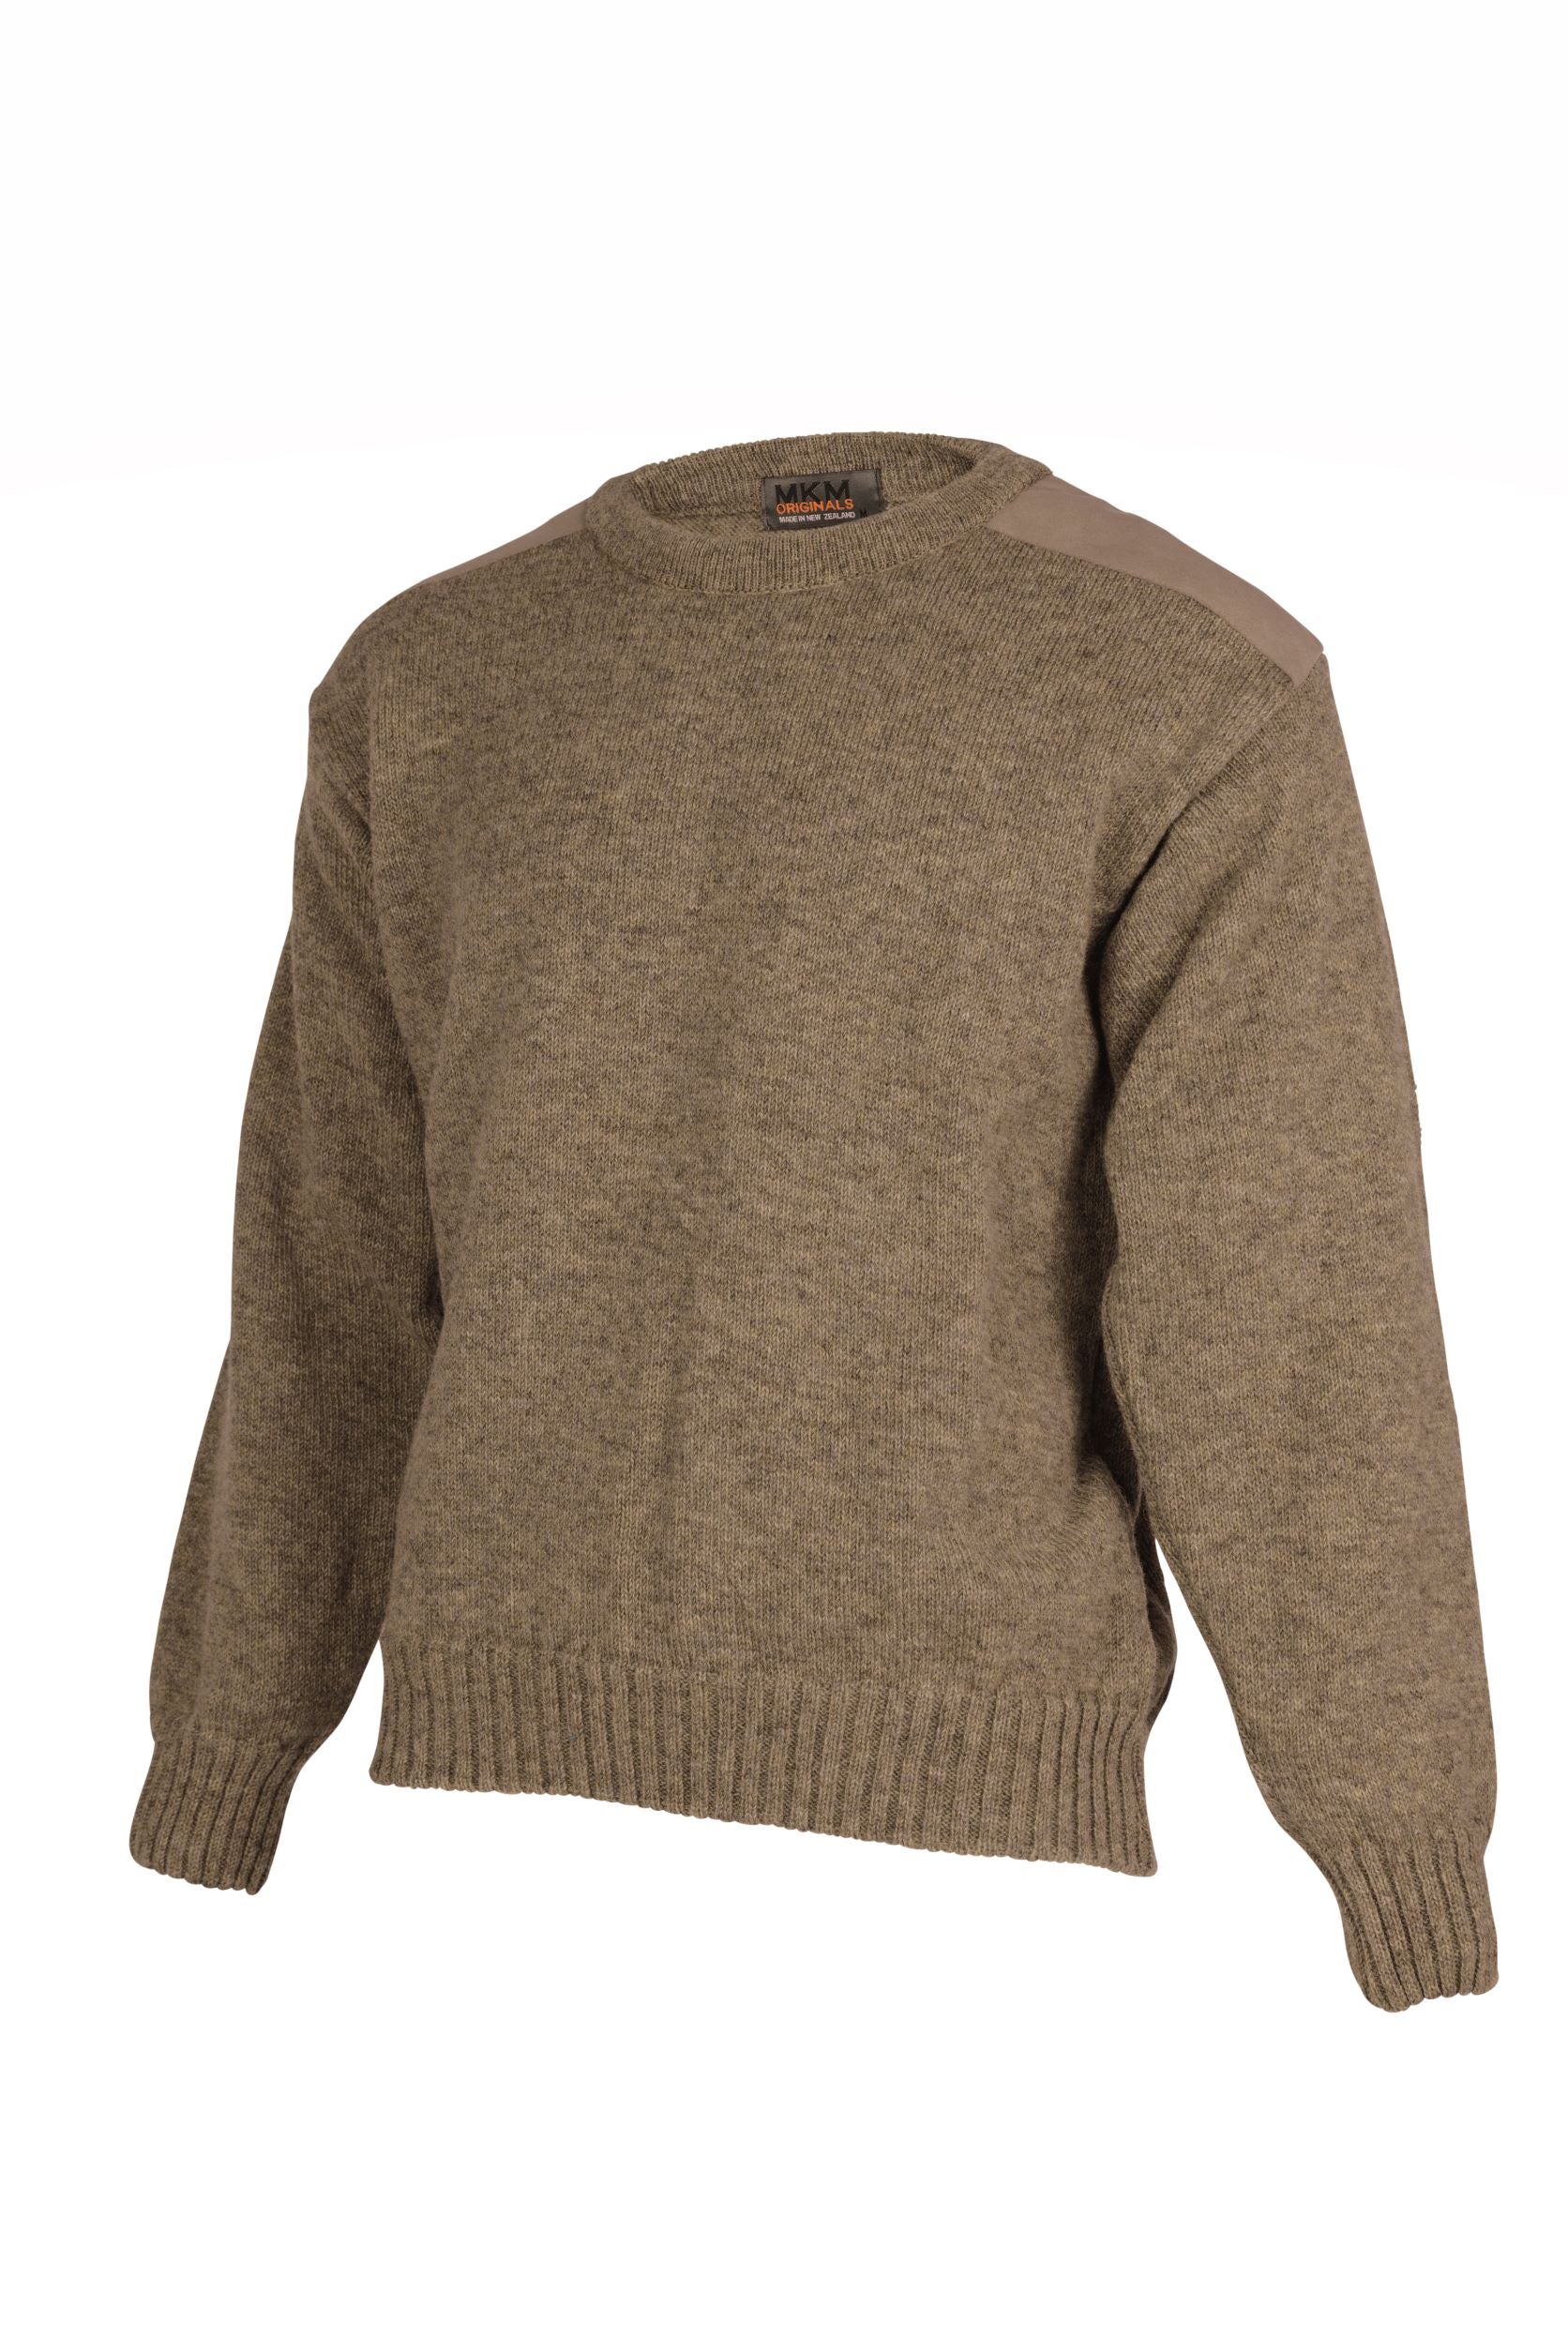 Merino Wool Ultimate Crew Sweater - MKM Knitwear